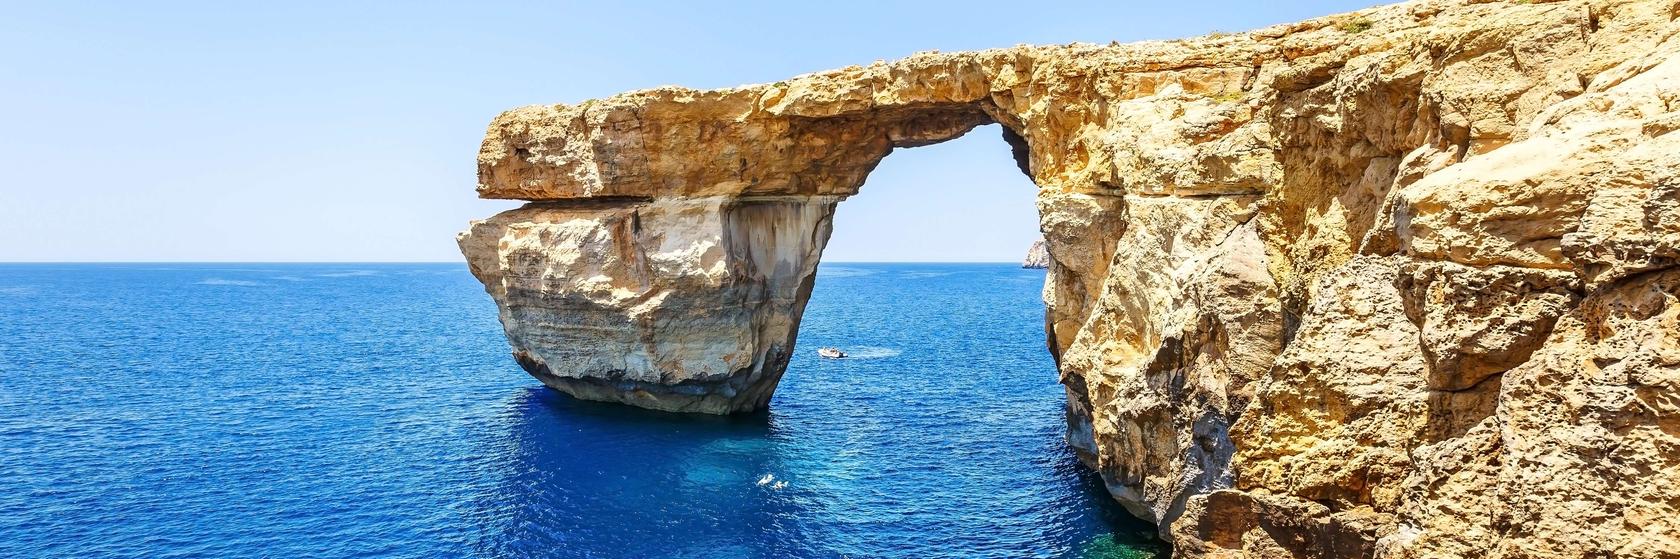 Nákupy a gastronomie na ostrově Gozo